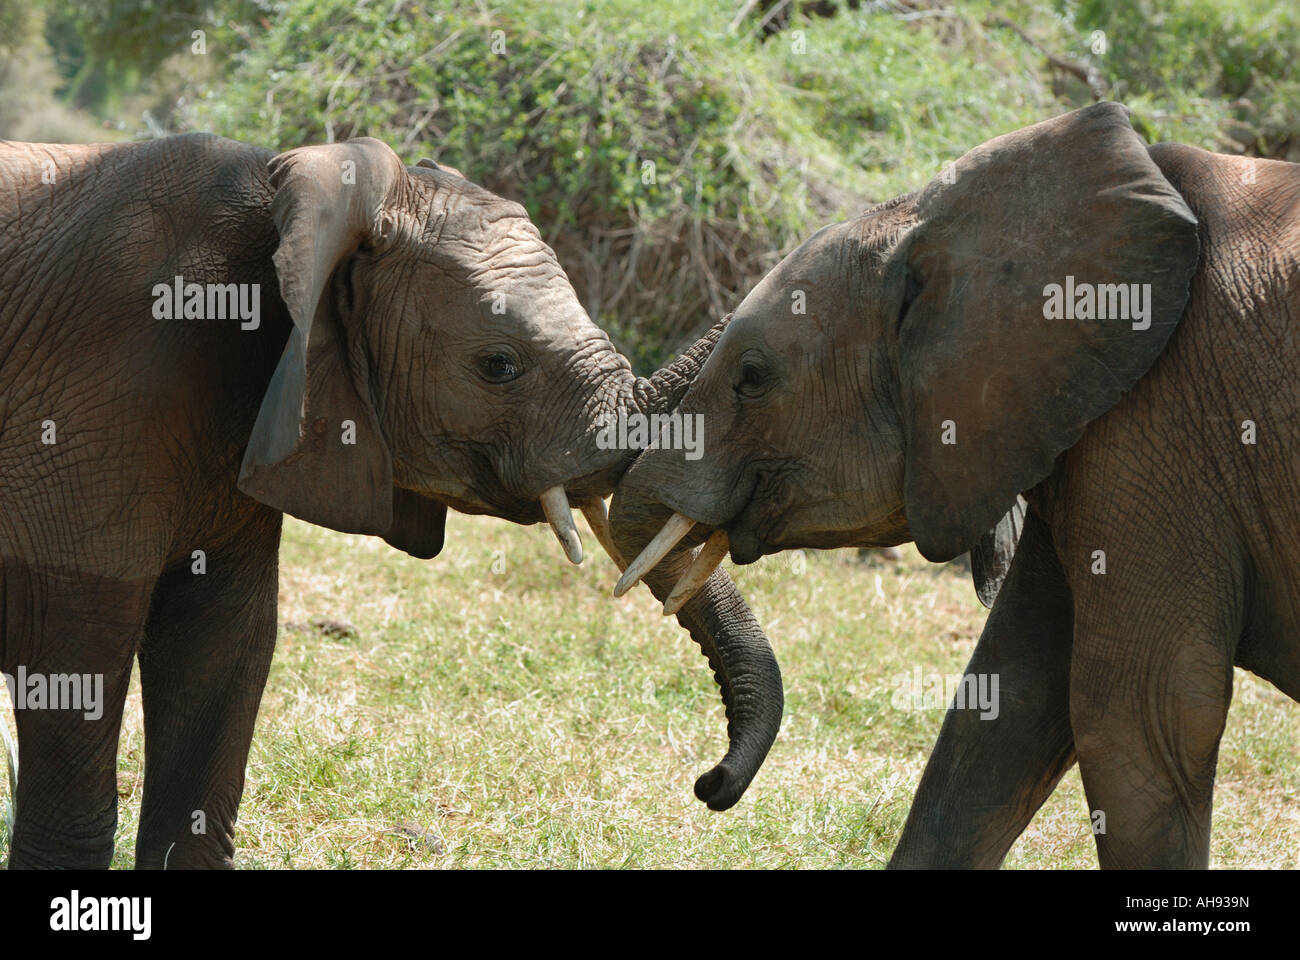 Les jeunes éléphants mâles chaque message d'autres dans la réserve nationale de Samburu, Kenya Afrique de l'est qu'ils se touchent d'autres malles Banque D'Images